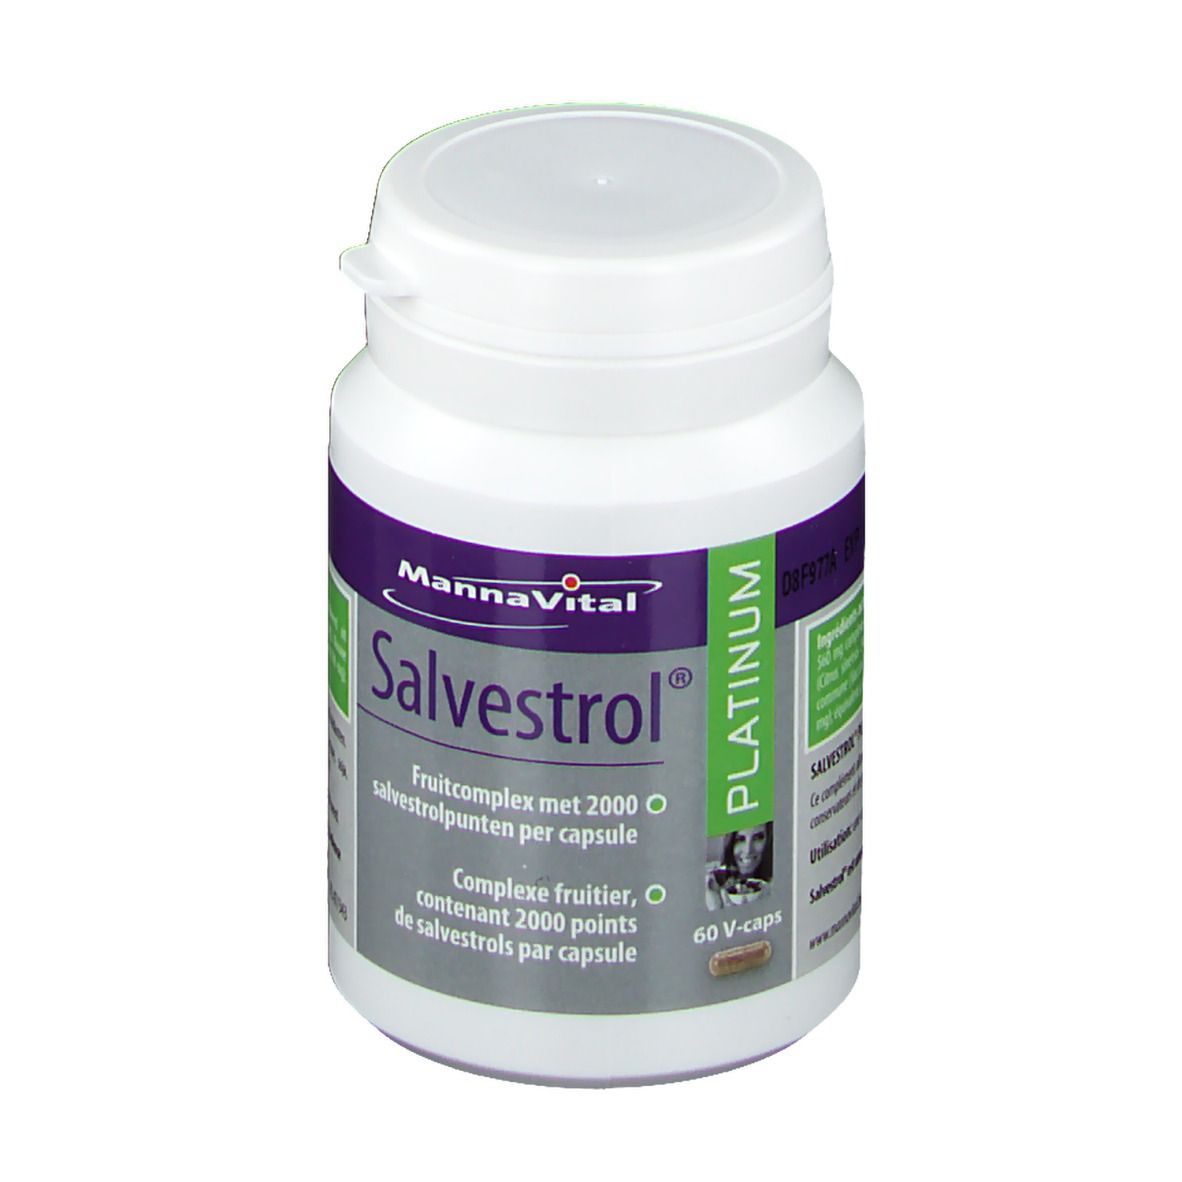 MannaVital Platinum Salvestrol®